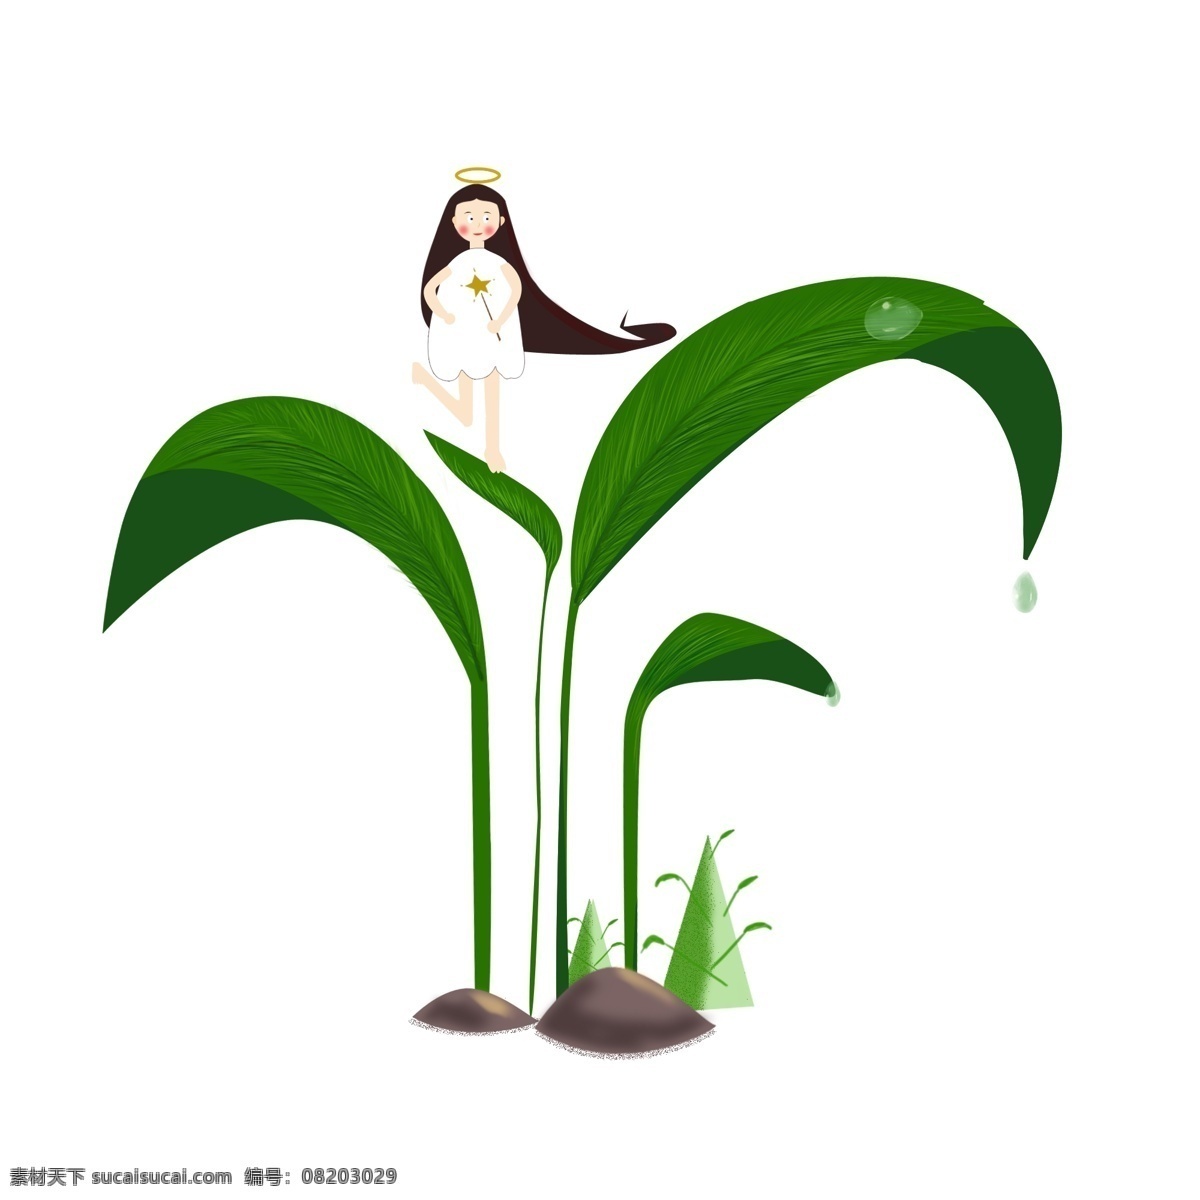 原创 小 天使 植物 绿色 手绘 童话 元素 水滴 梦幻 可爱 小清新 小天使 插画风